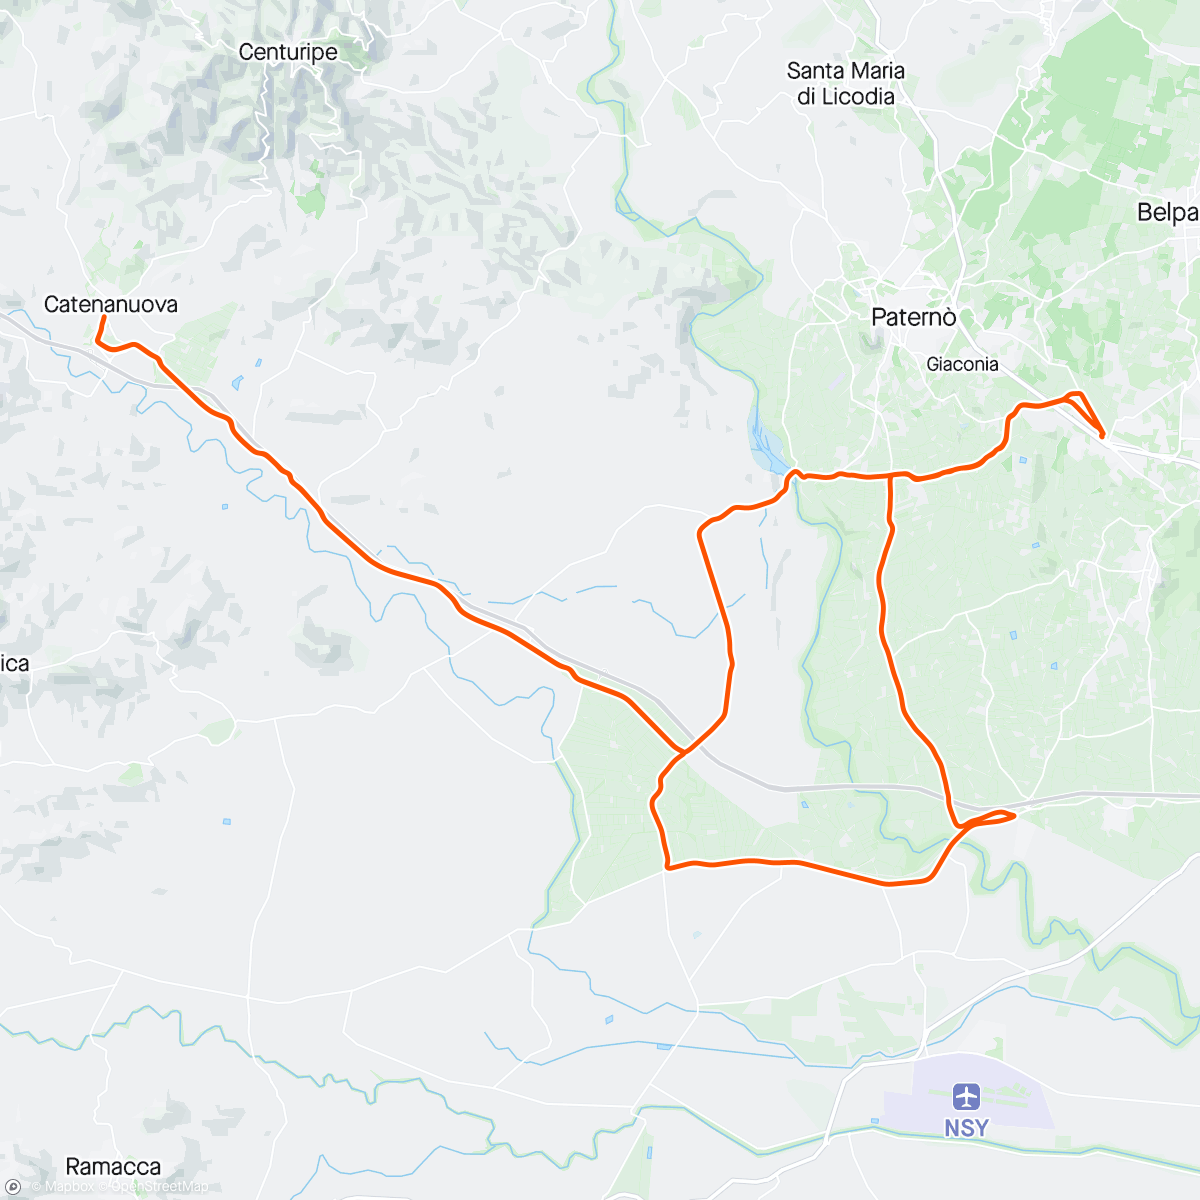 「Etnapolis-Catenanuova 1° volta」活動的地圖